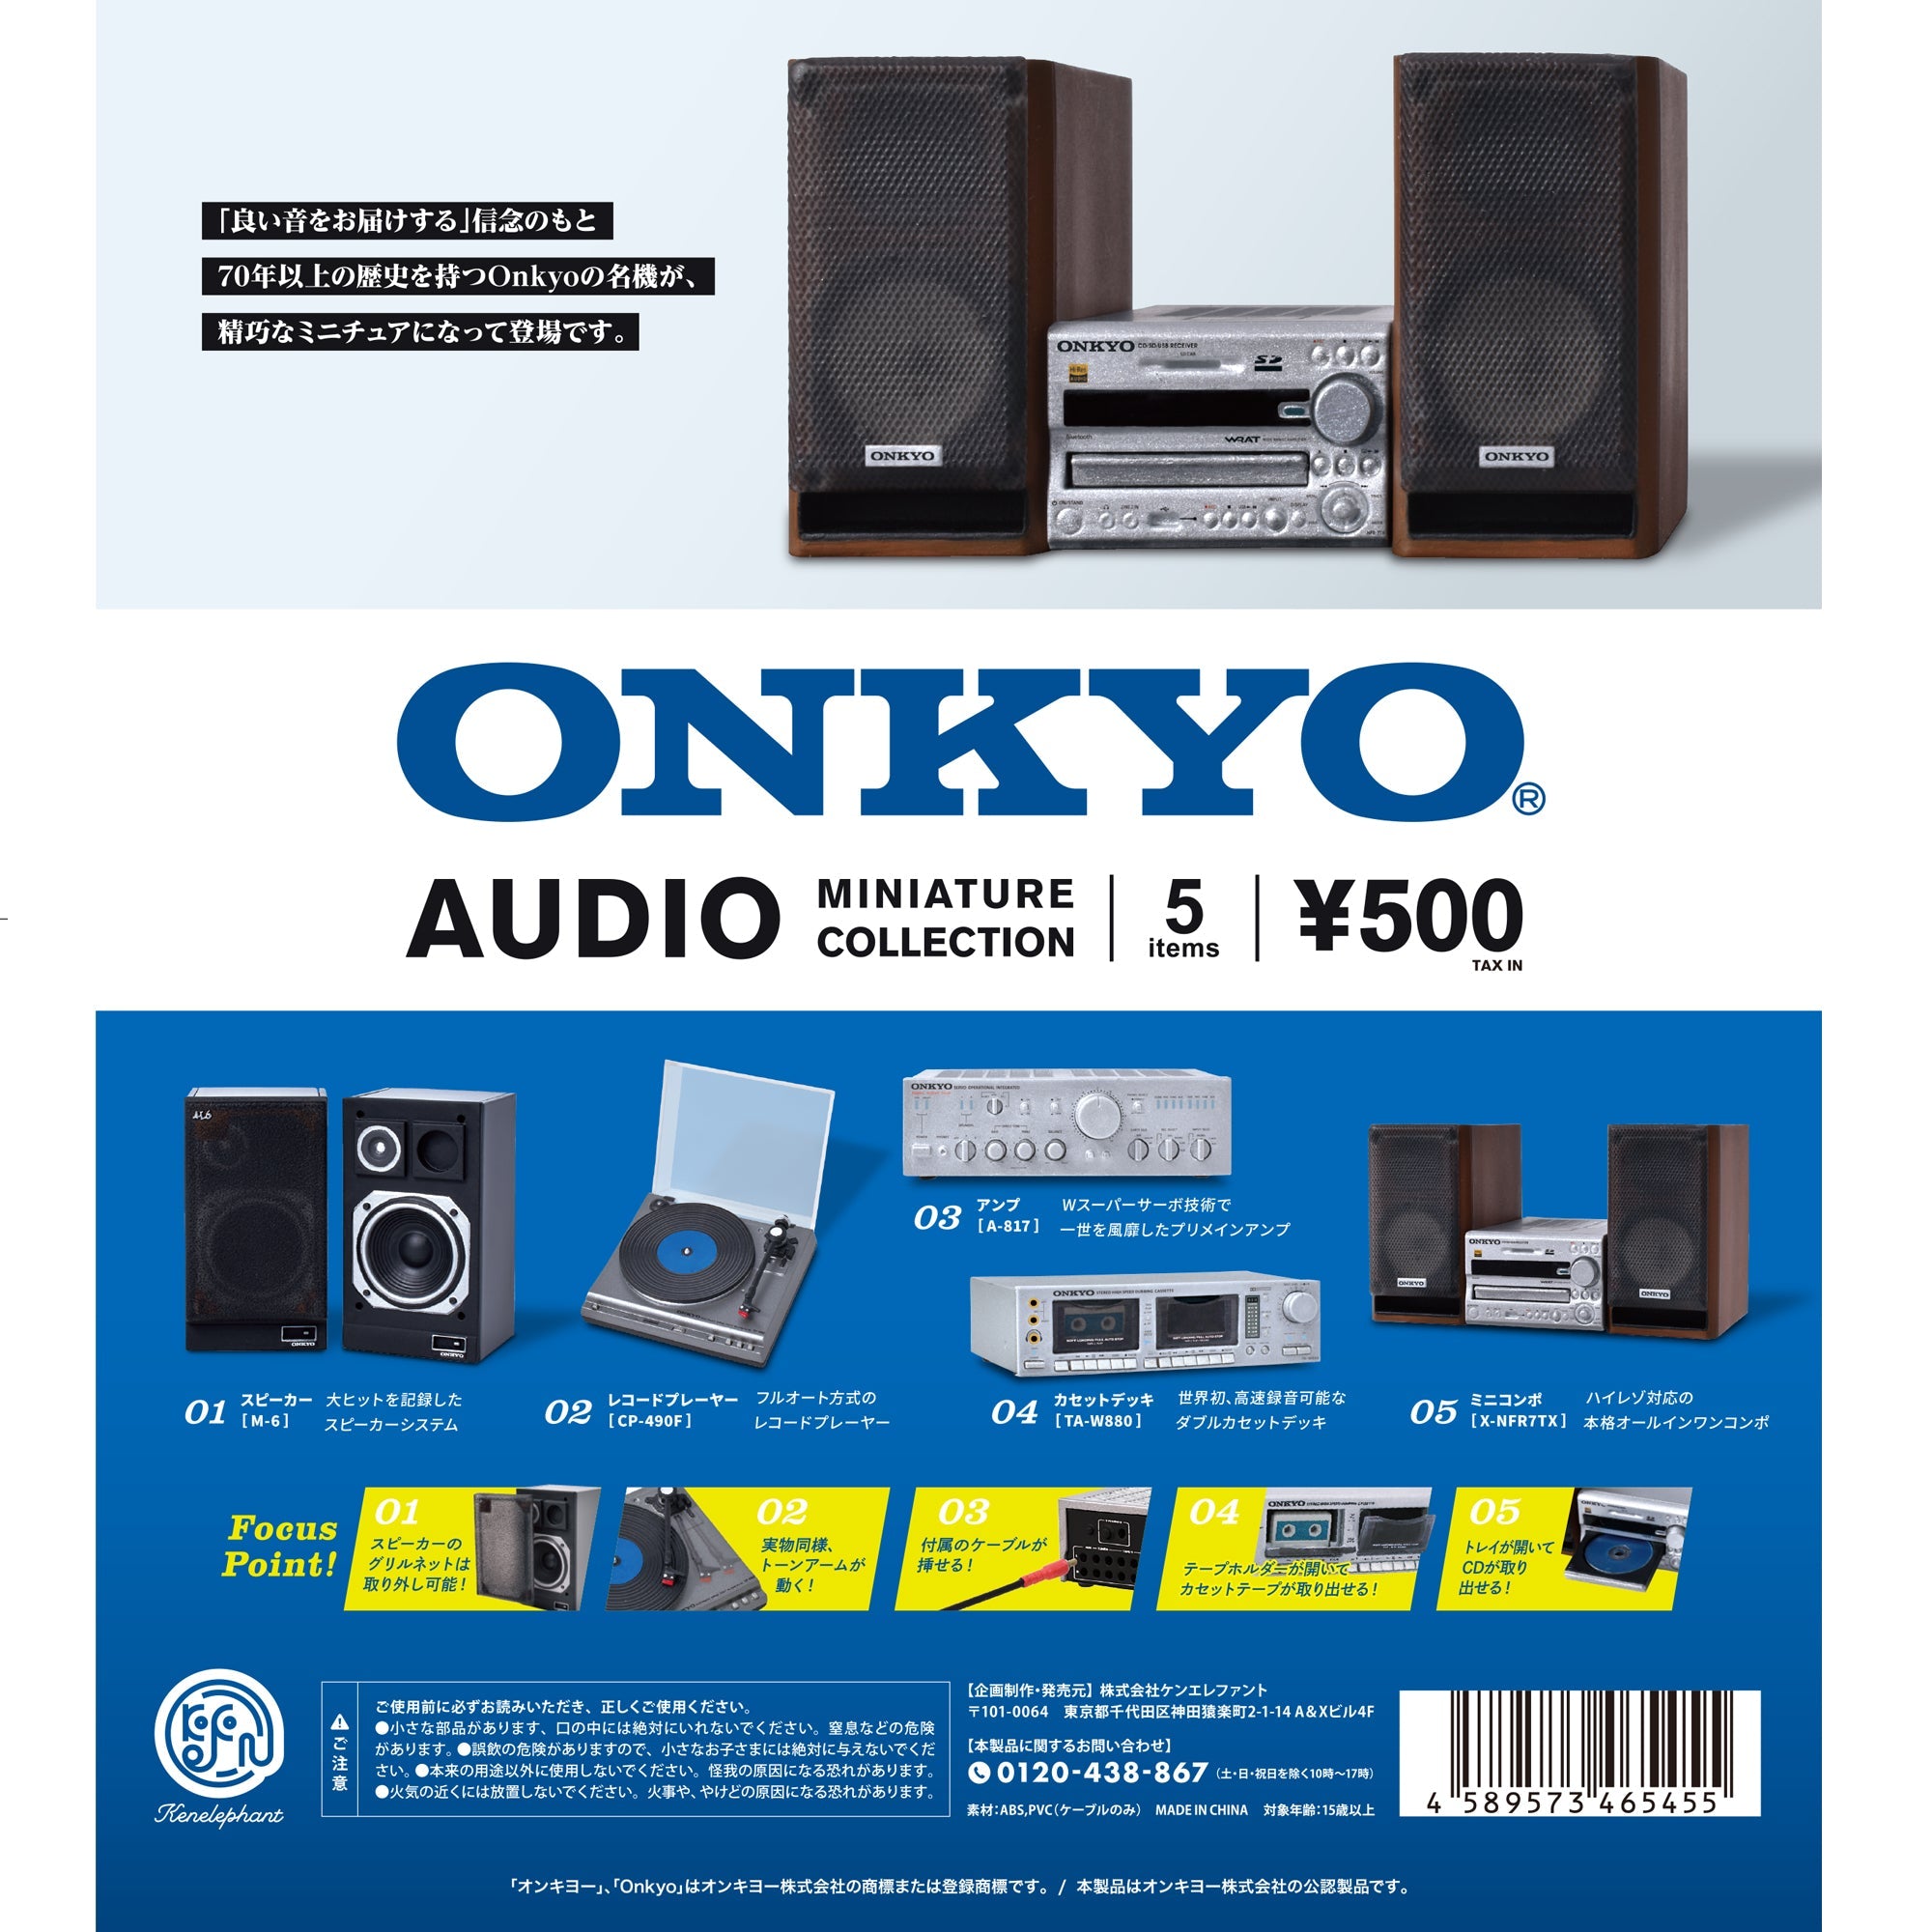 【美品】ONKYO X-NFR7TX ミニコンポ オンキヨー オンキョー